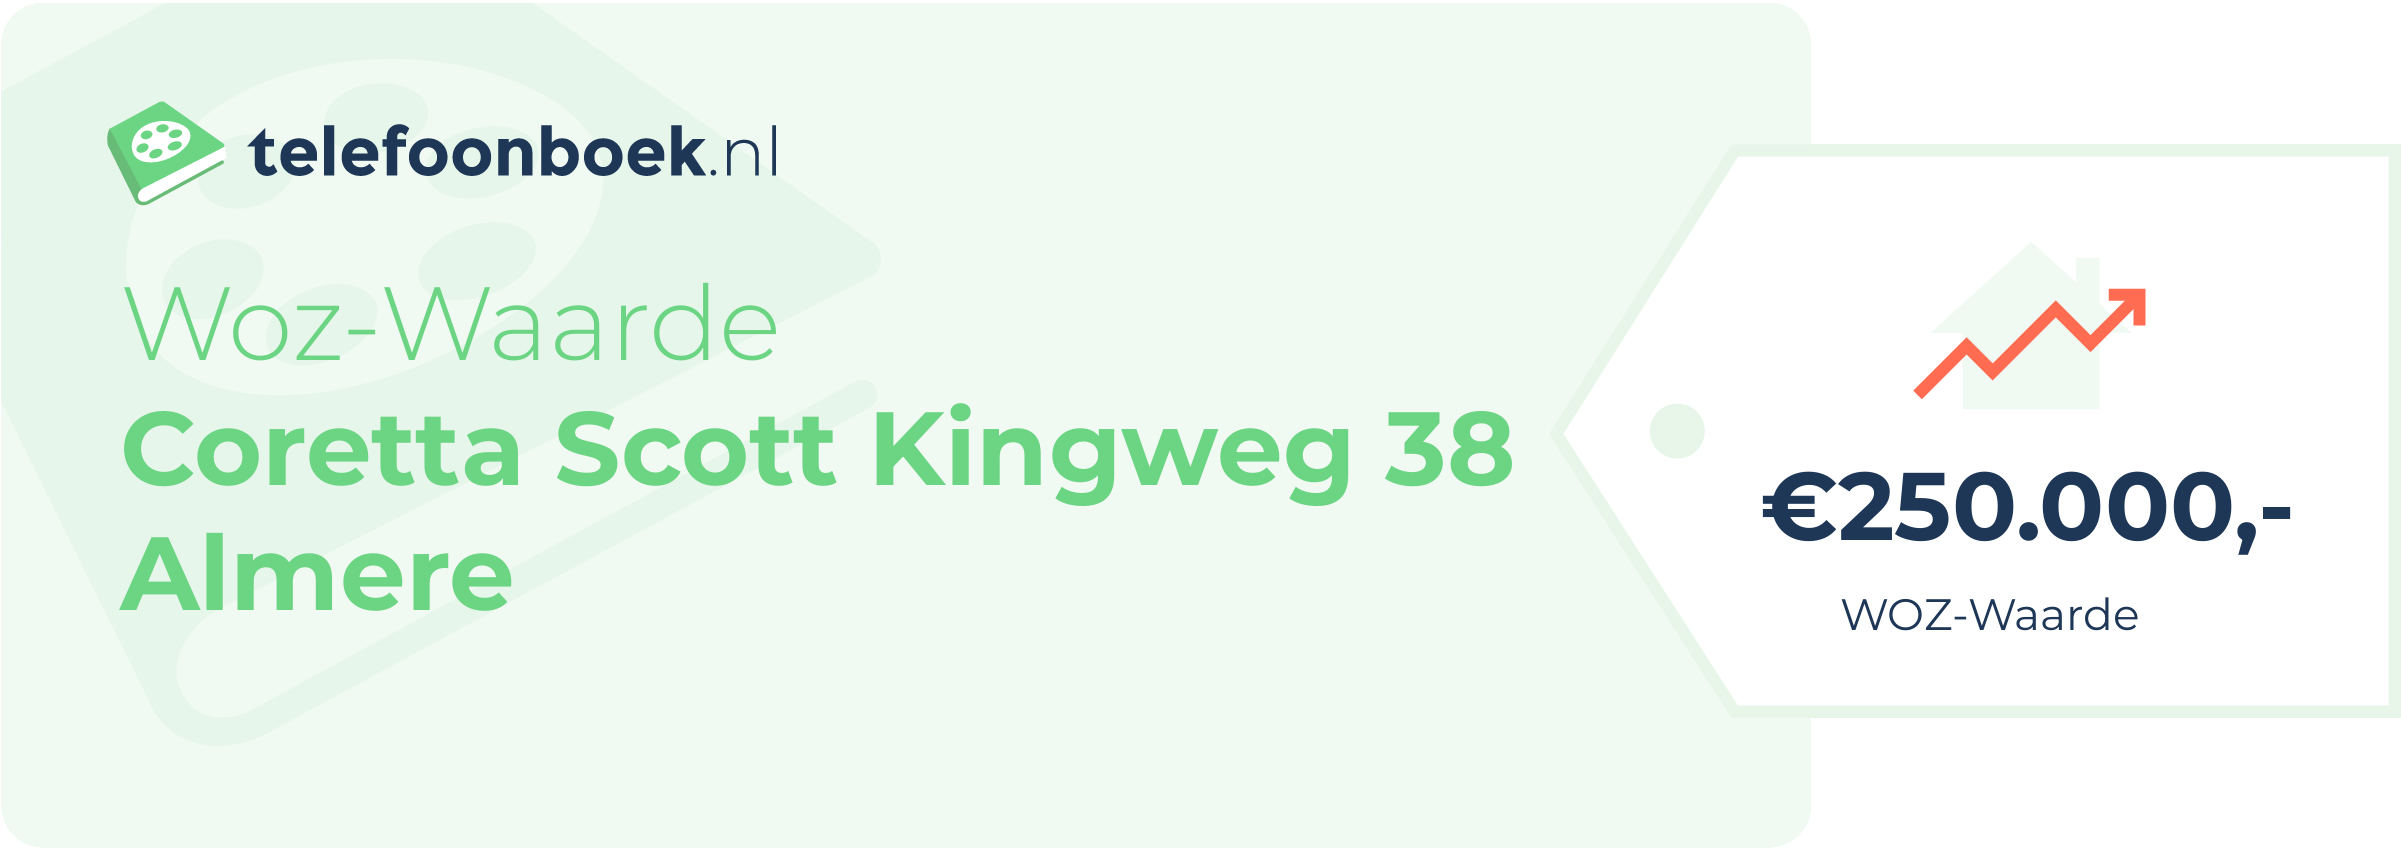 WOZ-waarde Coretta Scott Kingweg 38 Almere